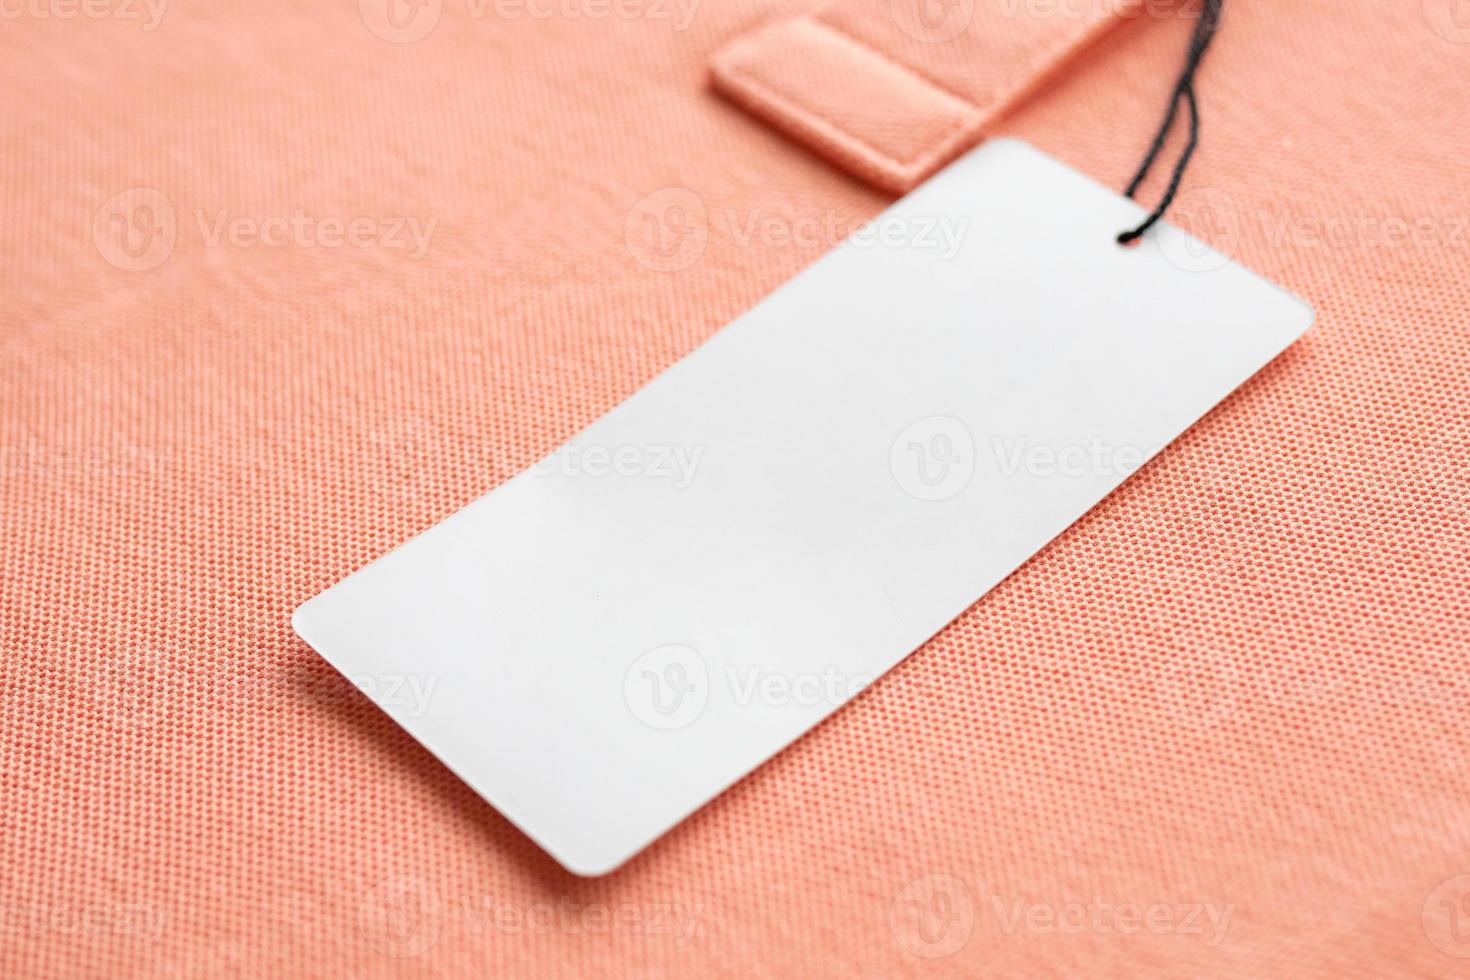 etiqueta de etiqueta de roupas brancas em branco no fundo de textura de tecido rosa foto